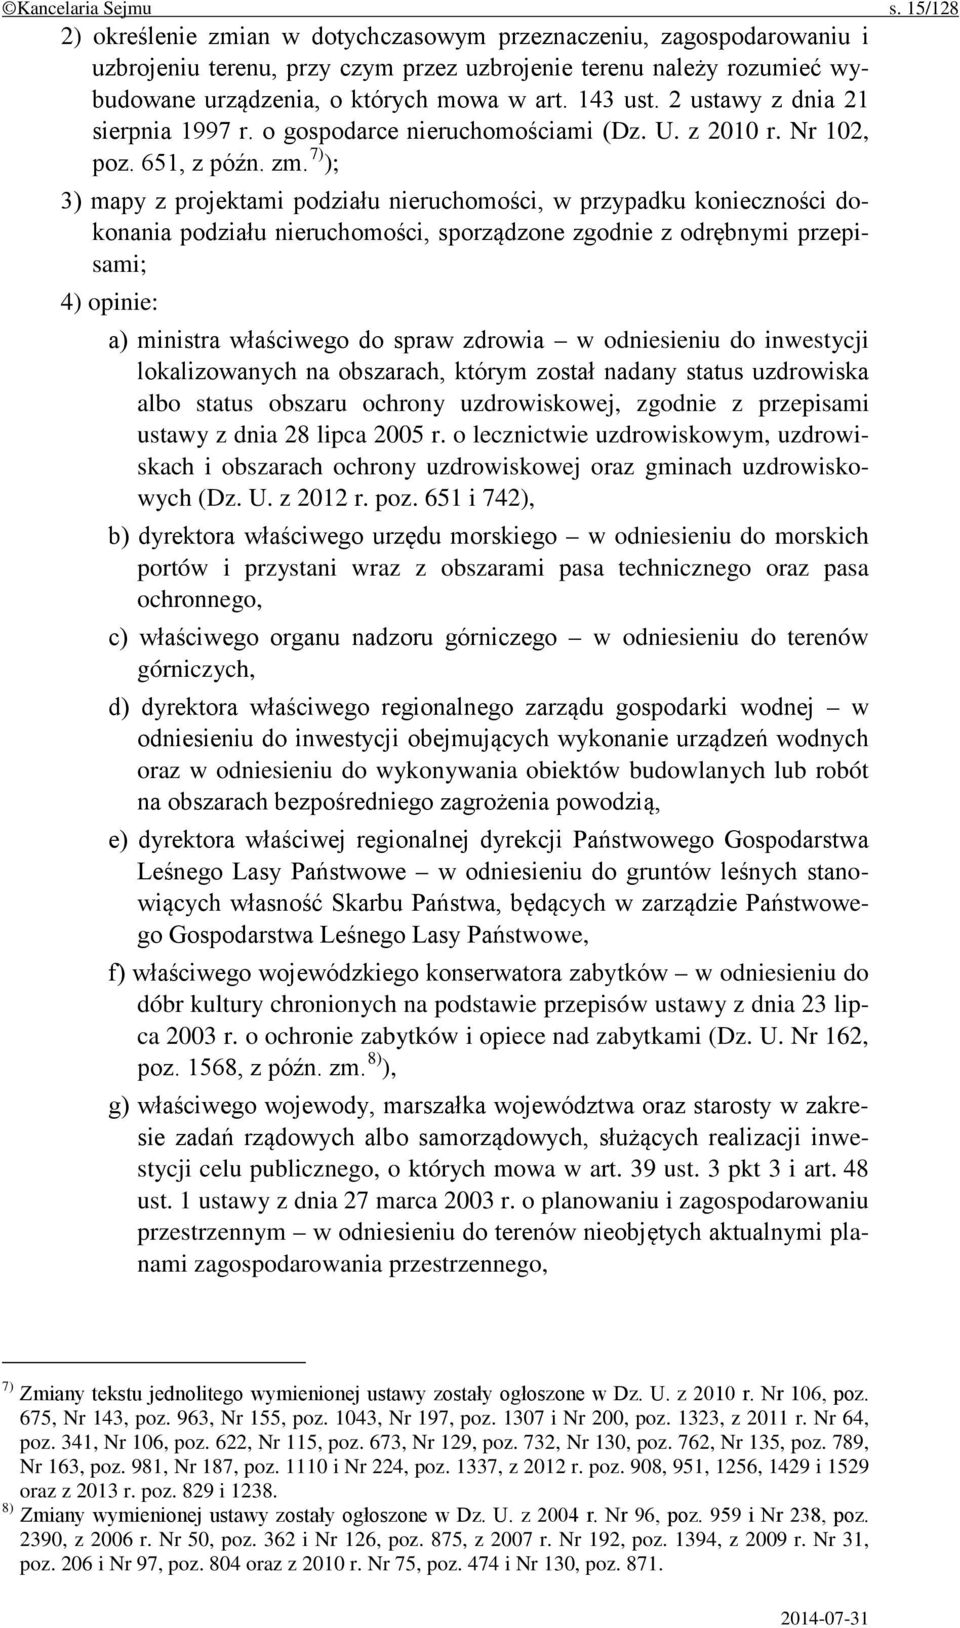 2 ustawy z dnia 21 sierpnia 1997 r. o gospodarce nieruchomościami (Dz. U. z 2010 r. Nr 102, poz. 651, z późn. zm.